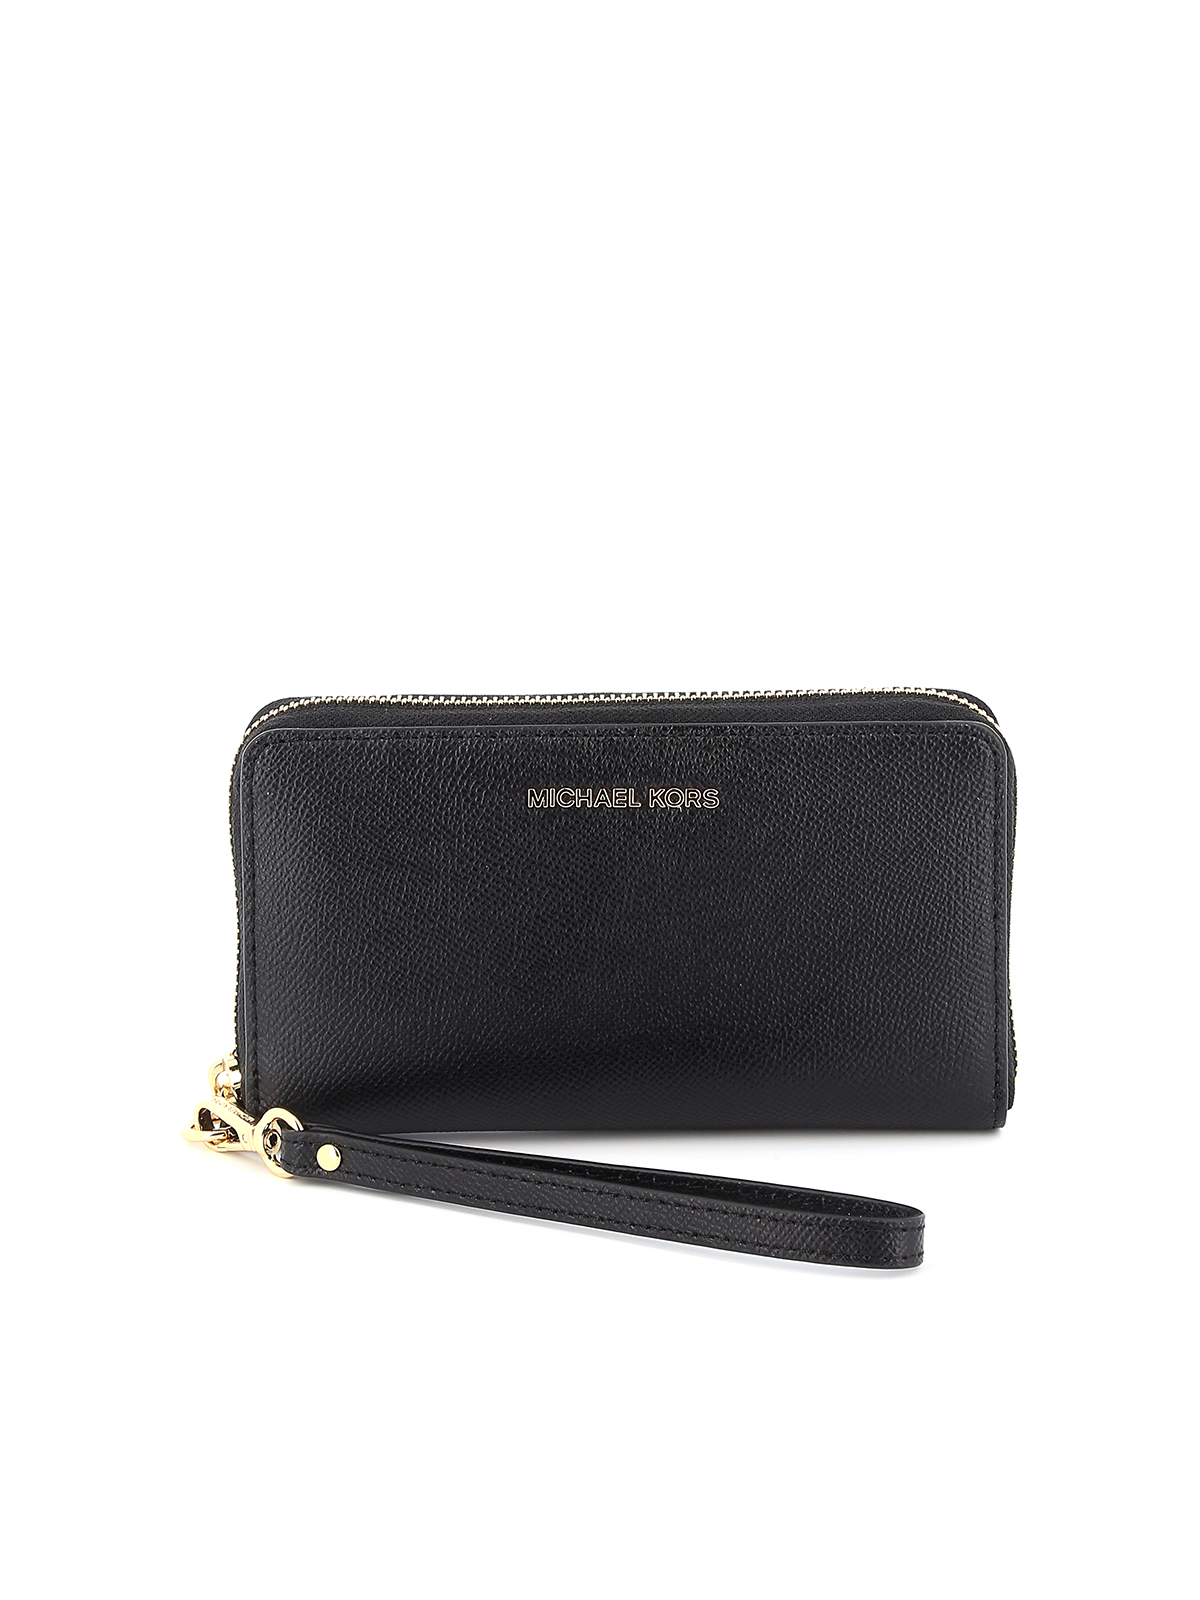 Michael Kors Jet Set Charm Black Leather Zip Wallet 34S1GT9Z1L-001 -  Women's accessories - Accessories